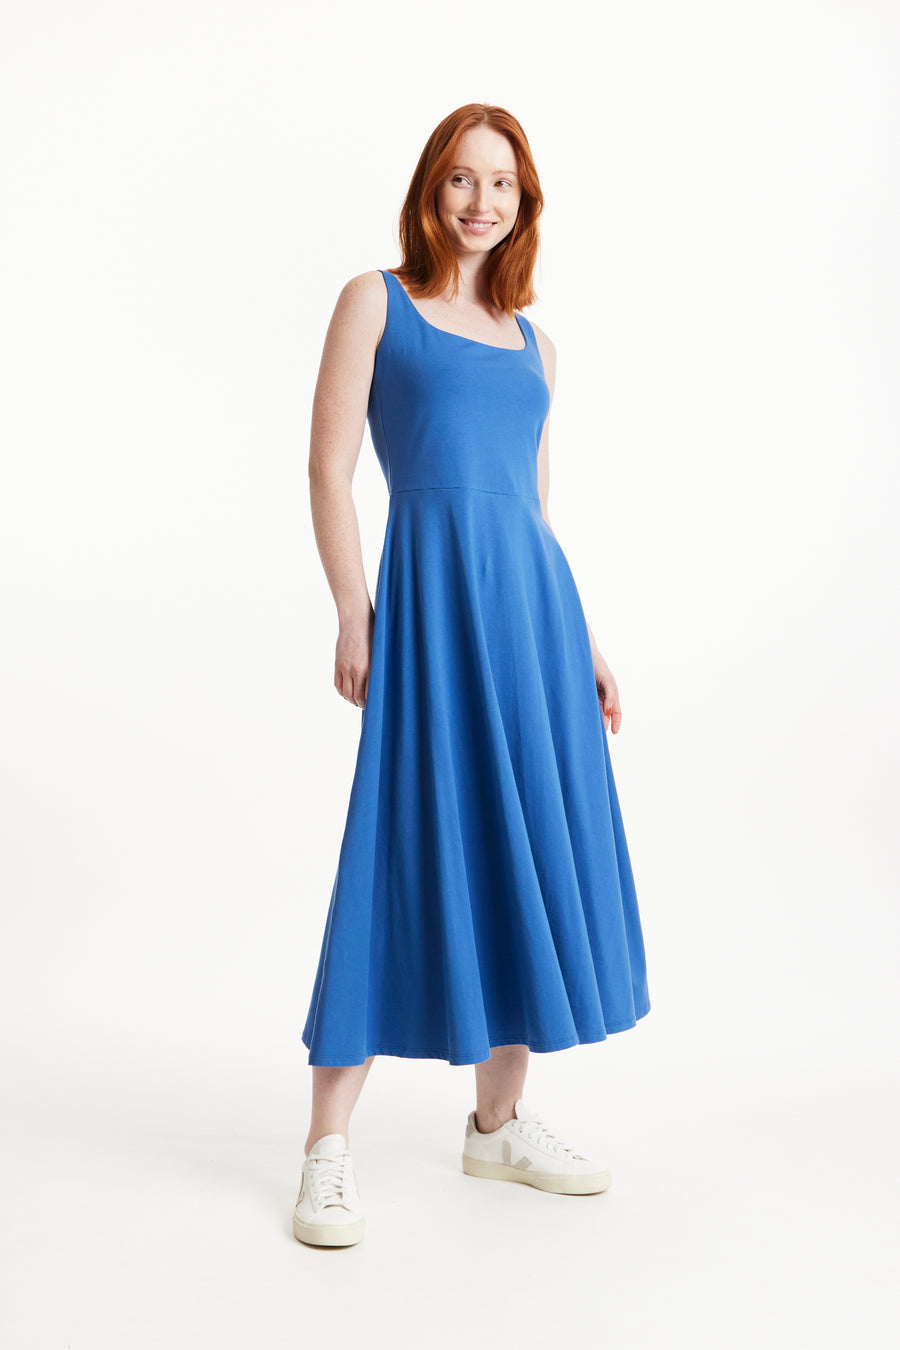 People Tree Fairer Handel, ethisches und nachhaltiges Tyra -Kleid in Blau 95% Bio -zertifizierter Baumwolle, 5% Elastane